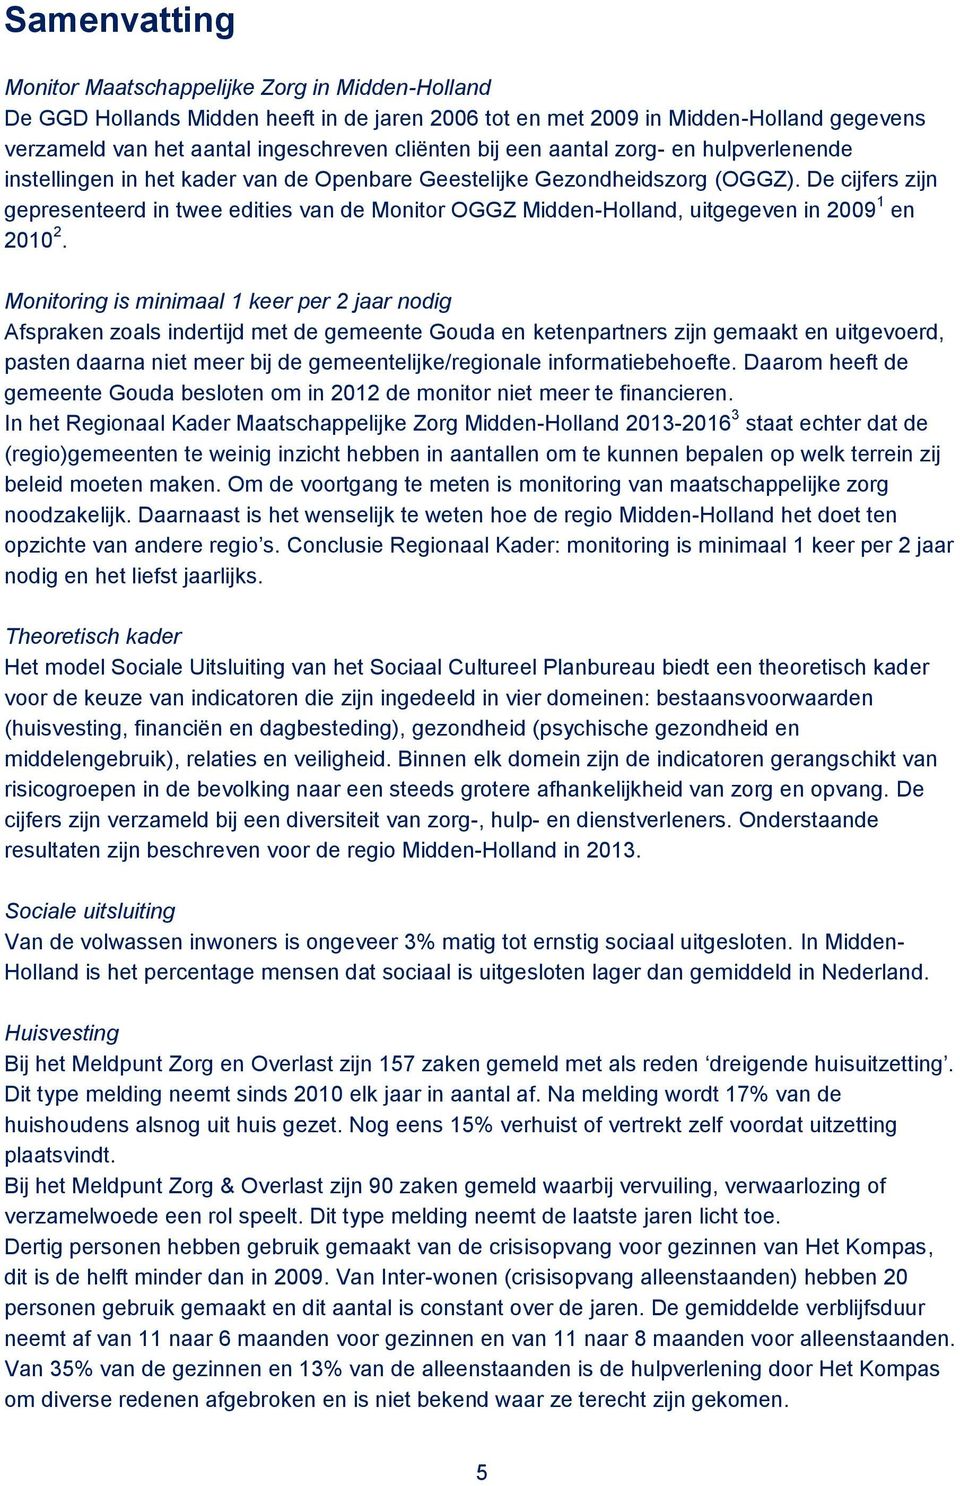 De cijfers zijn gepresenteerd in twee edities van de Monitor OGGZ Midden-Holland, uitgegeven in 2009 1 en 2010 2.